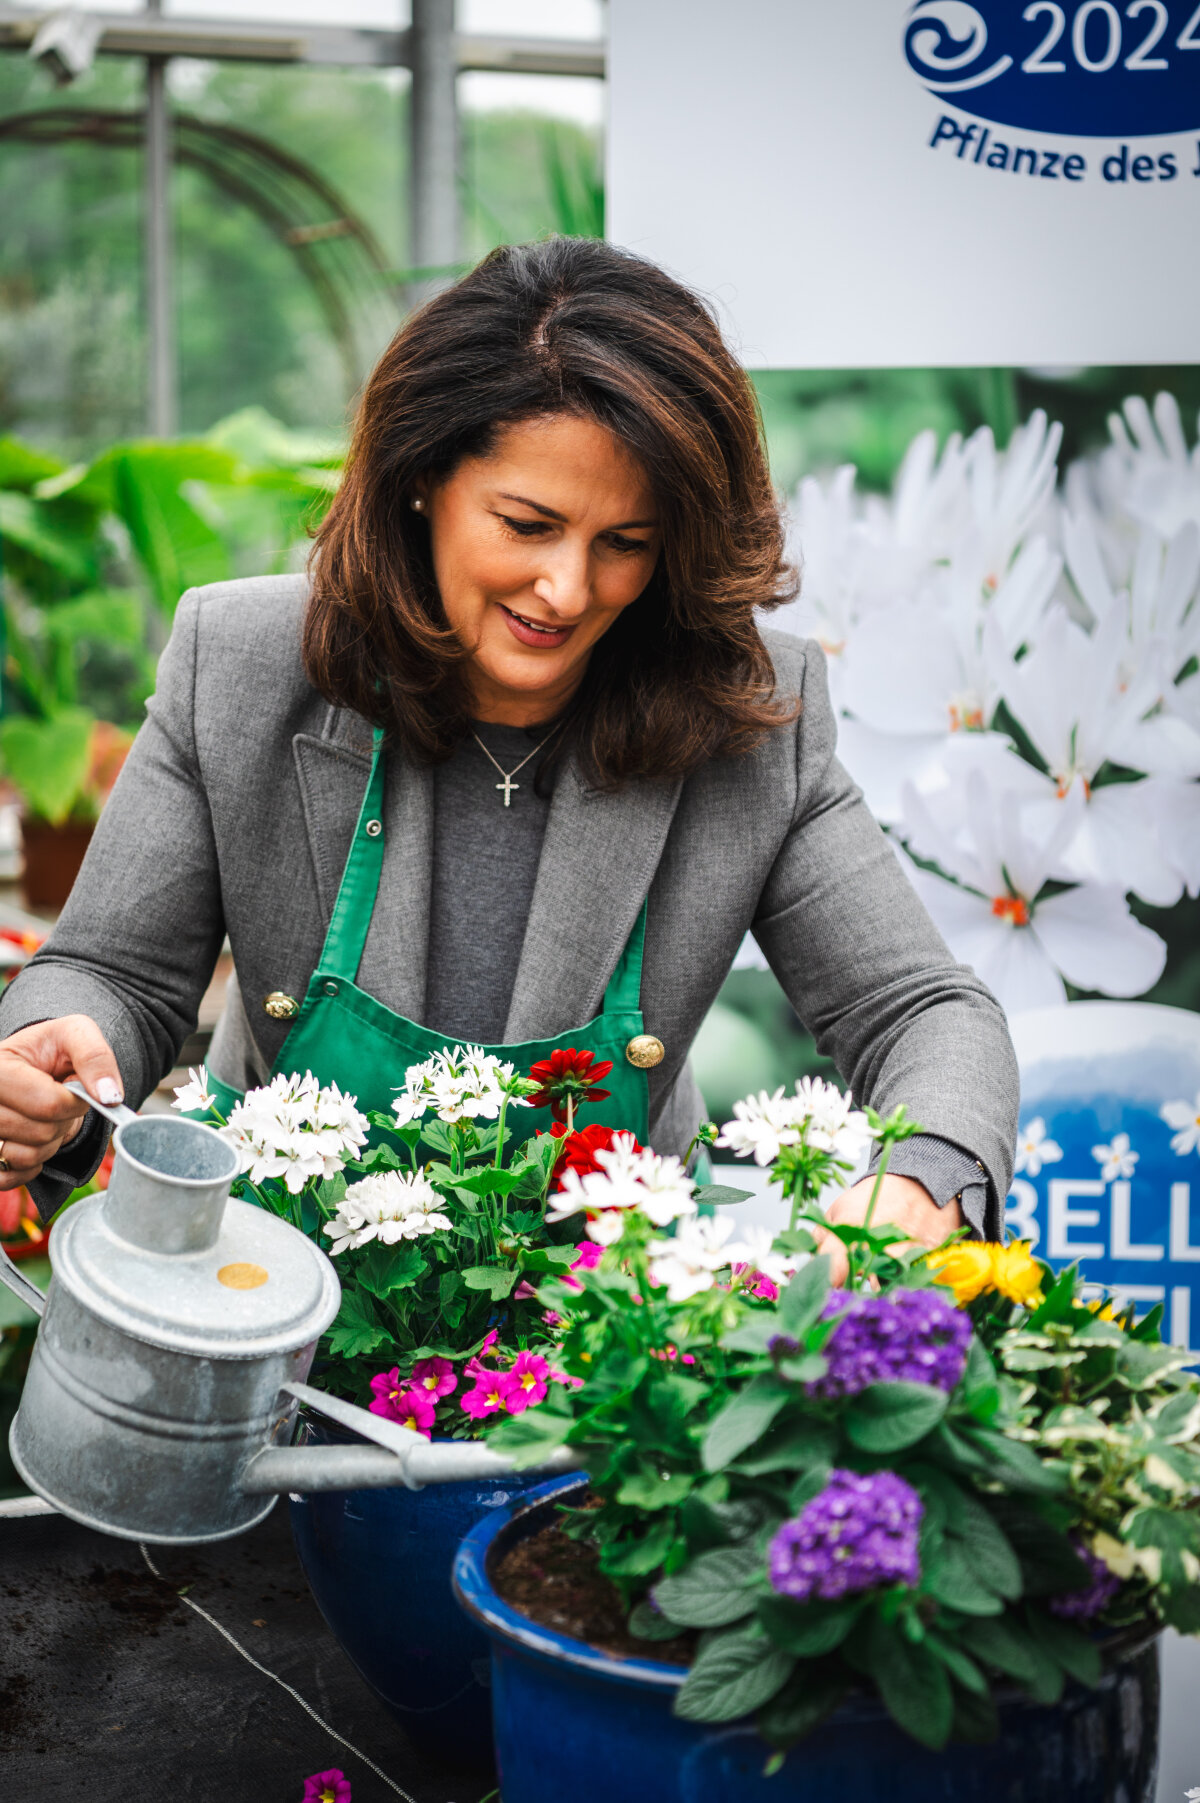 Staatsministerin Michaela Kaniber beim Gießen von Blumen